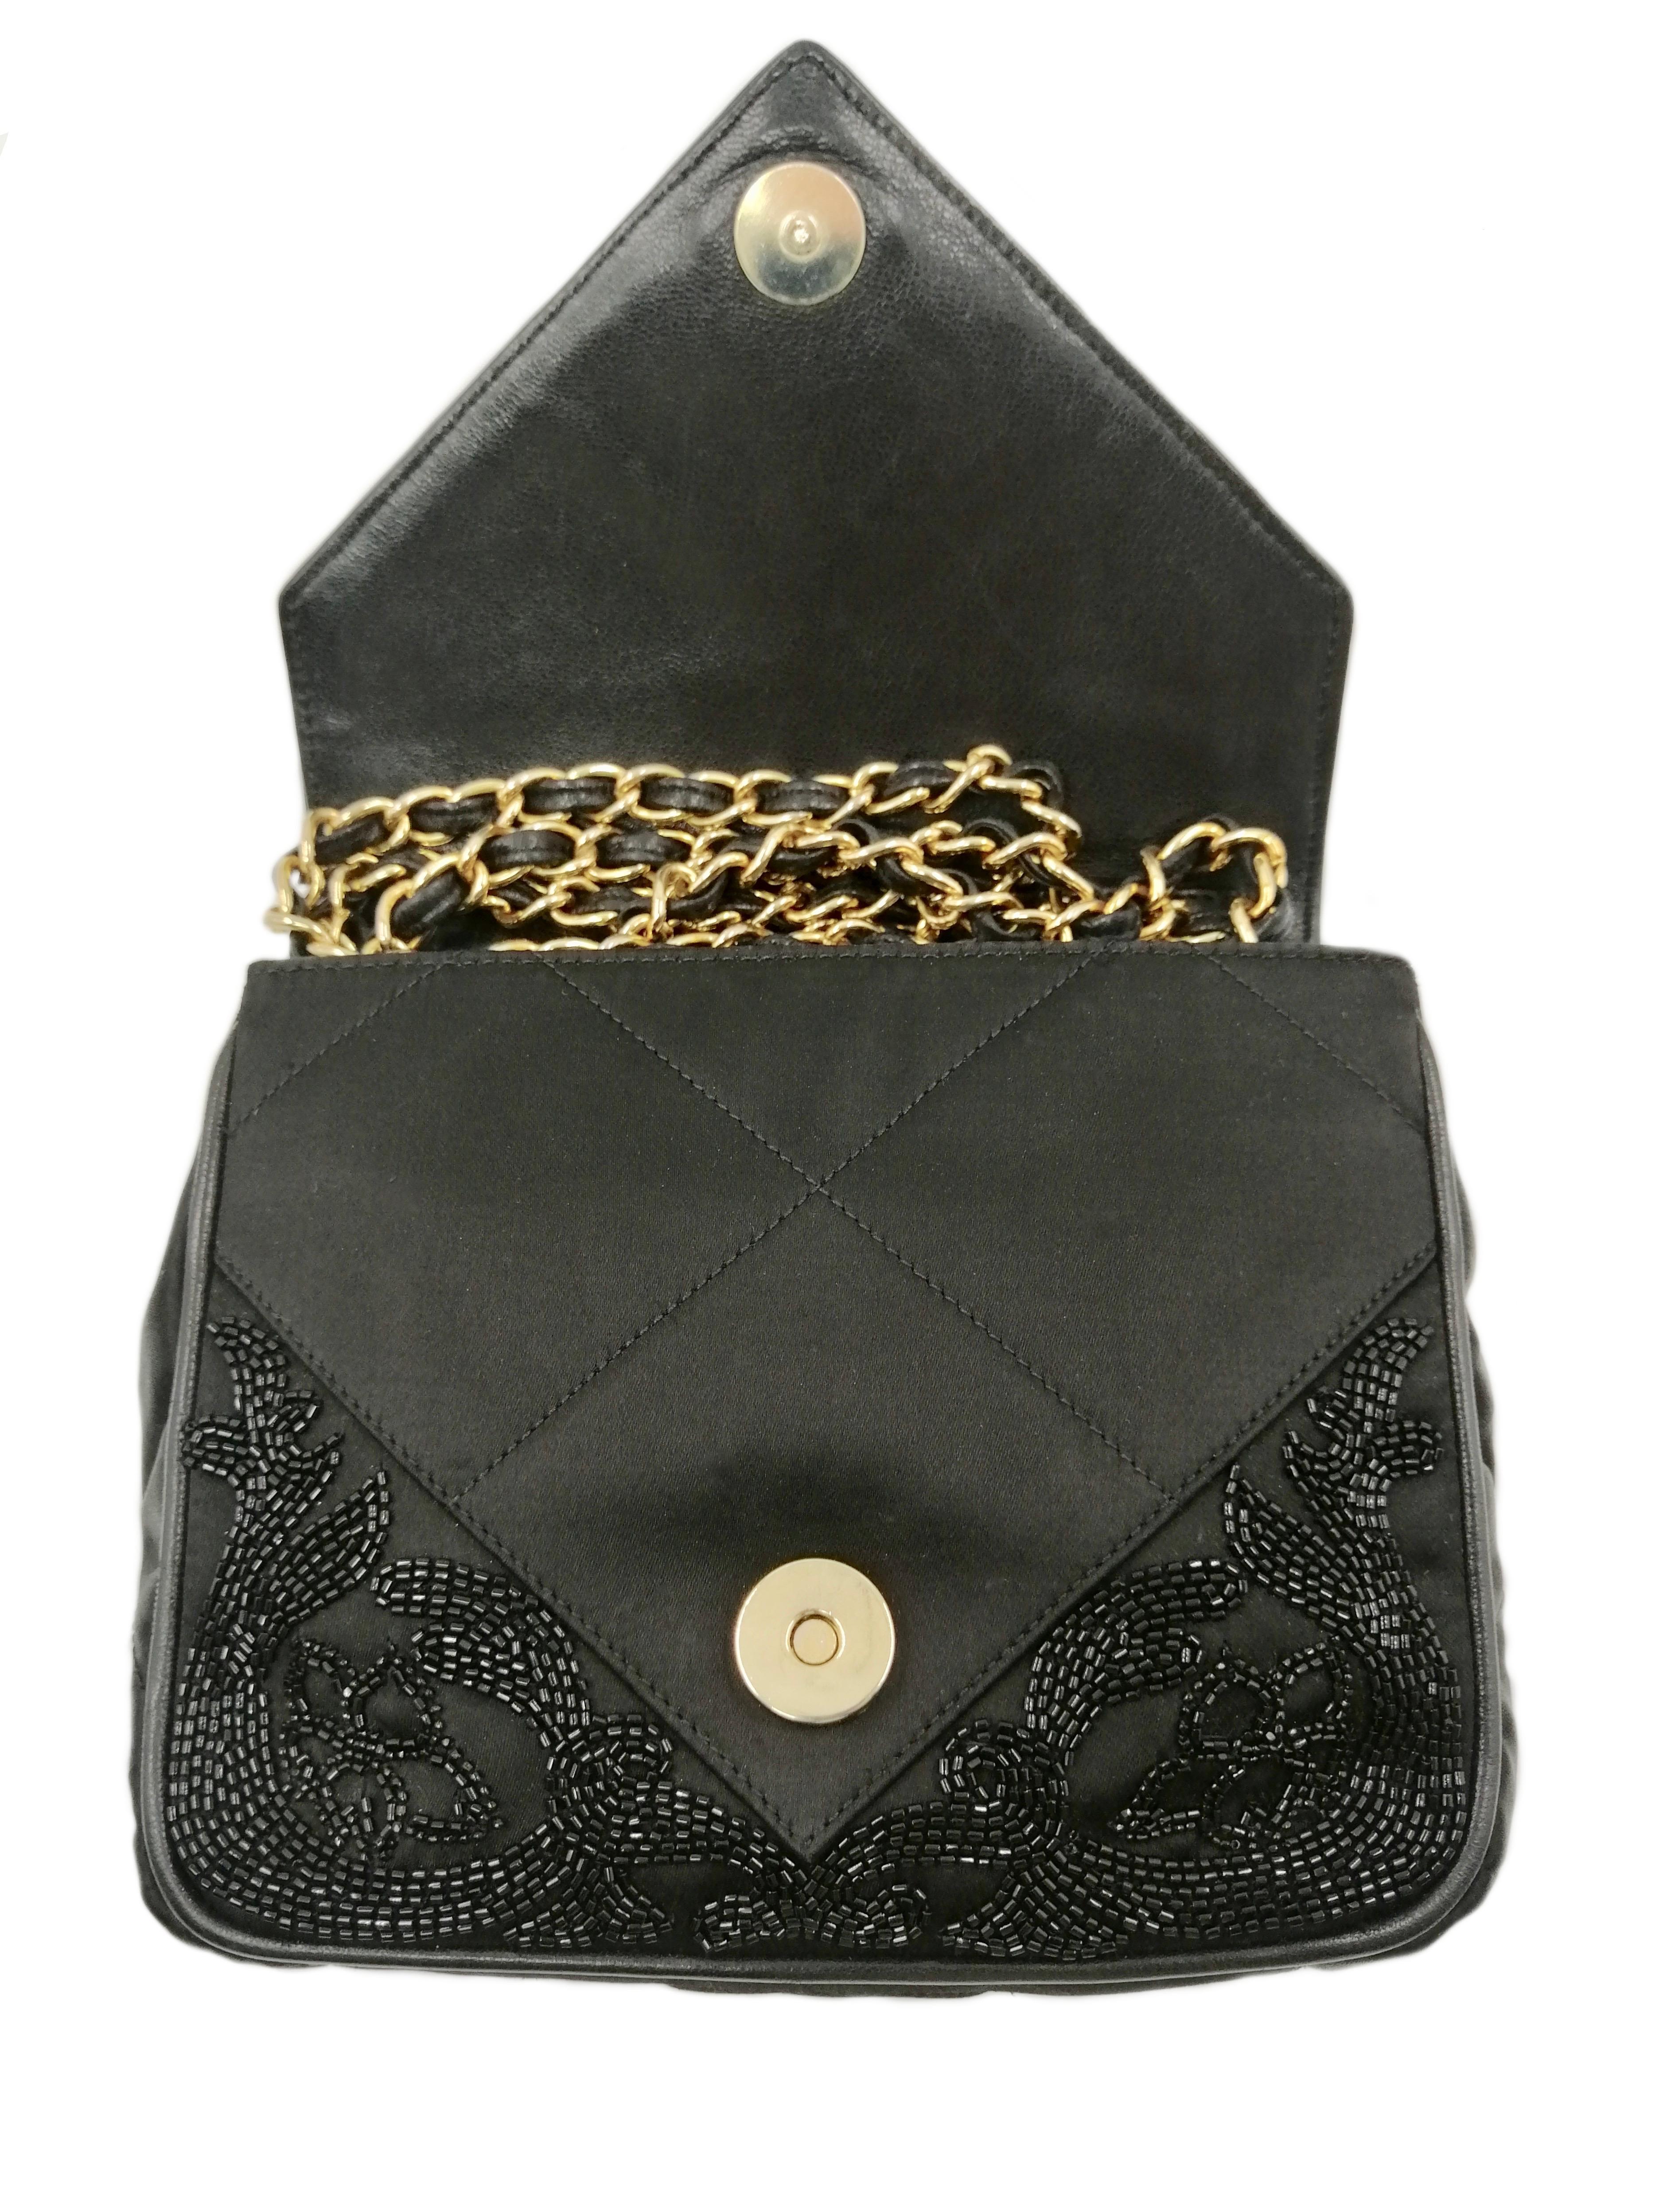 CHANEL black satin bag For Sale 1